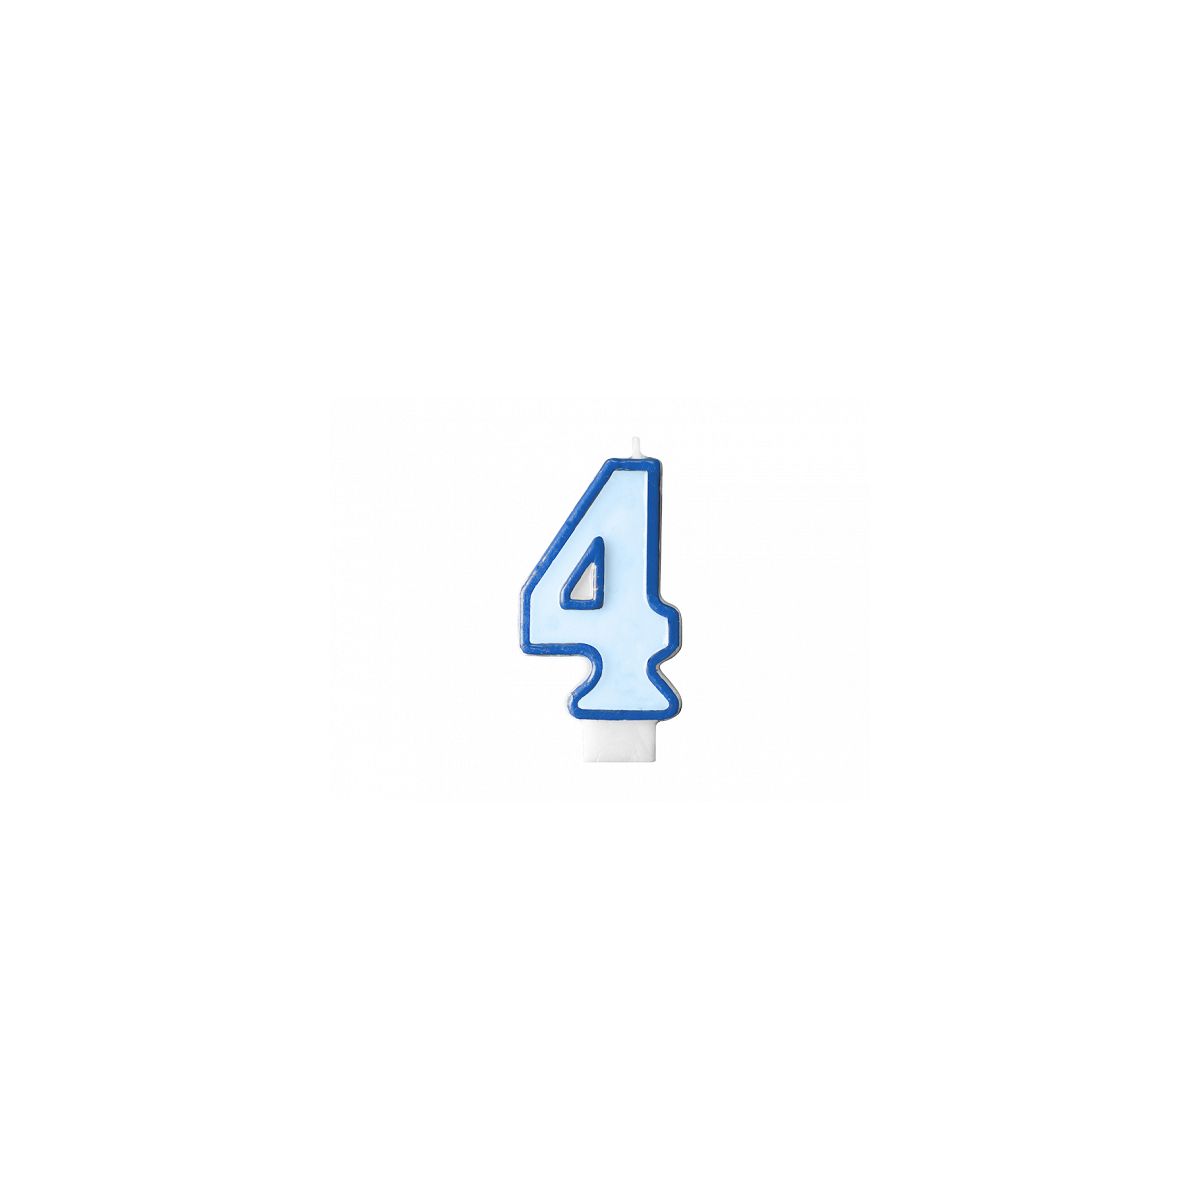 Świeczka urodzinowa Cyferka 4 w kolorze niebieskim 7 centymetrów Partydeco (SCU1-4-001)